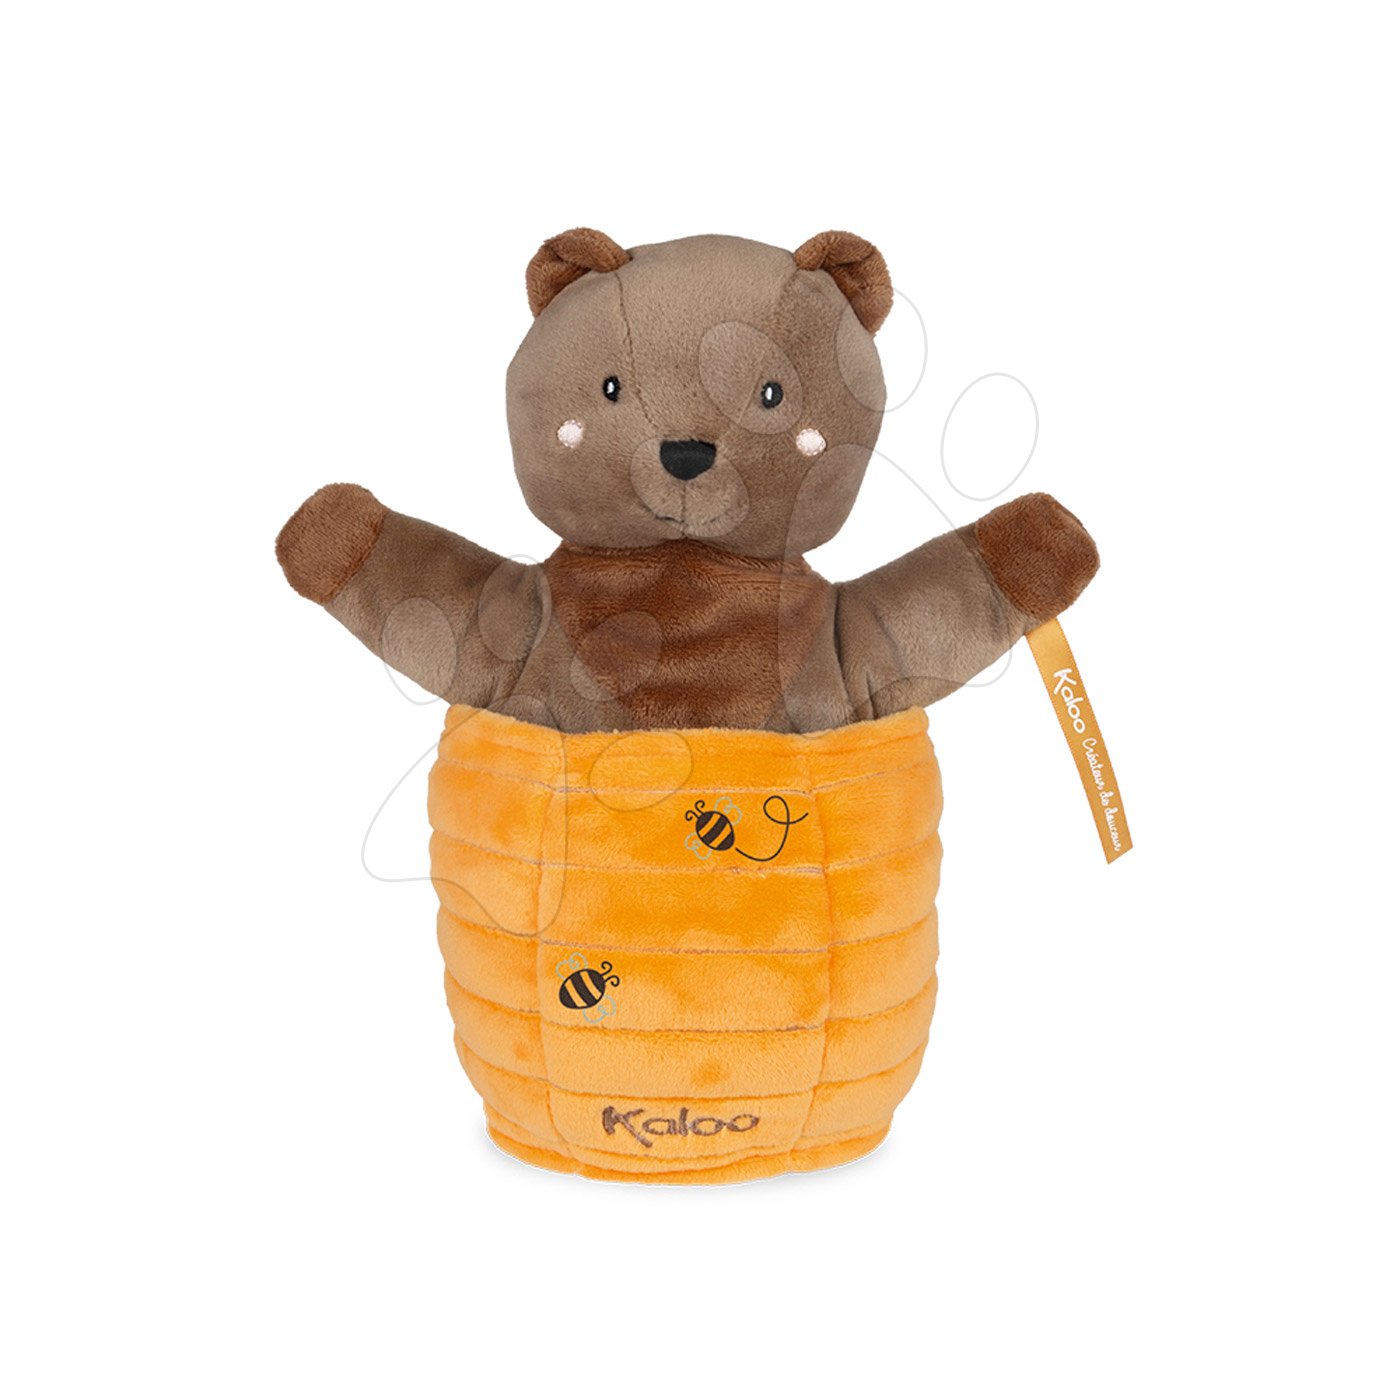 Kesztyűbábok - Plüss mackó kesztyűbáb Ted Bear Kachoo Kaloo meglepetés a kaptárban 25 cm legkisebbeknek 0 hó-tól